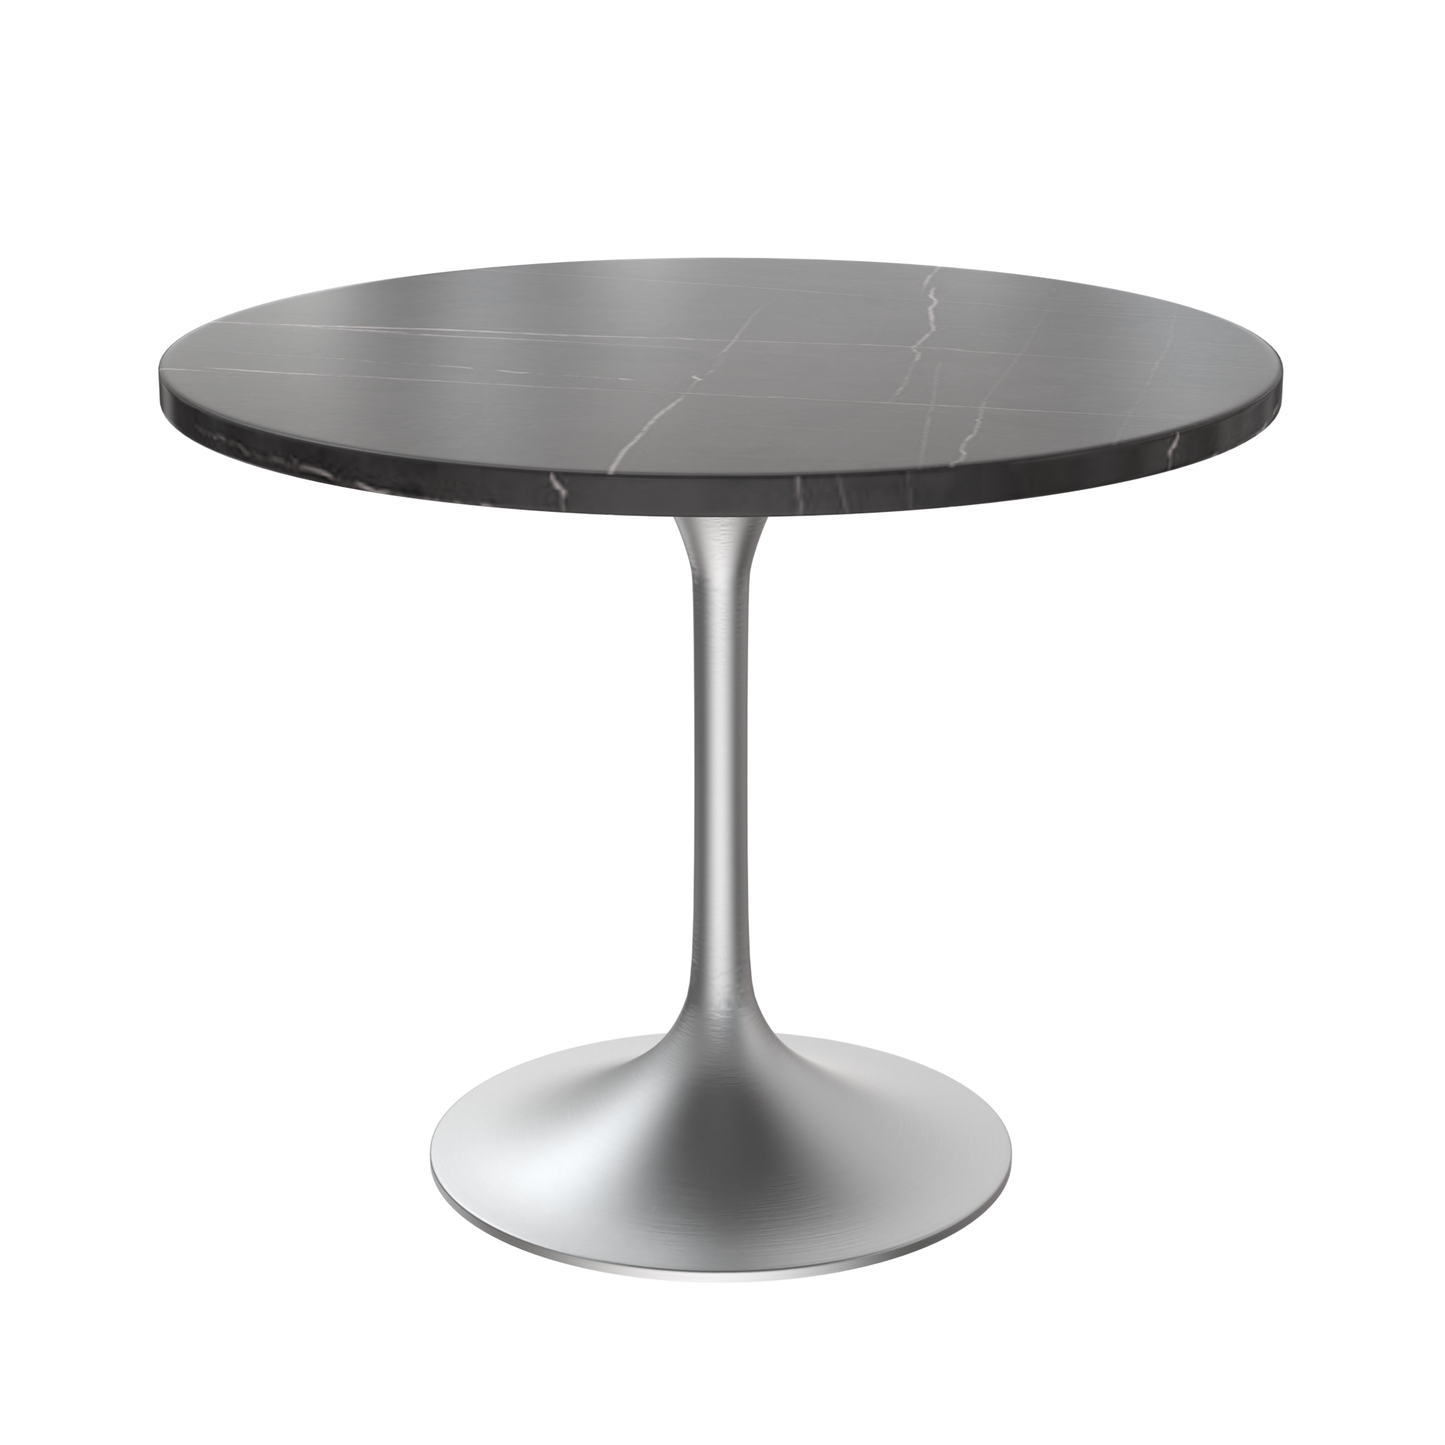 Vera 36" Round Dining Table - Brushed Chrome Base